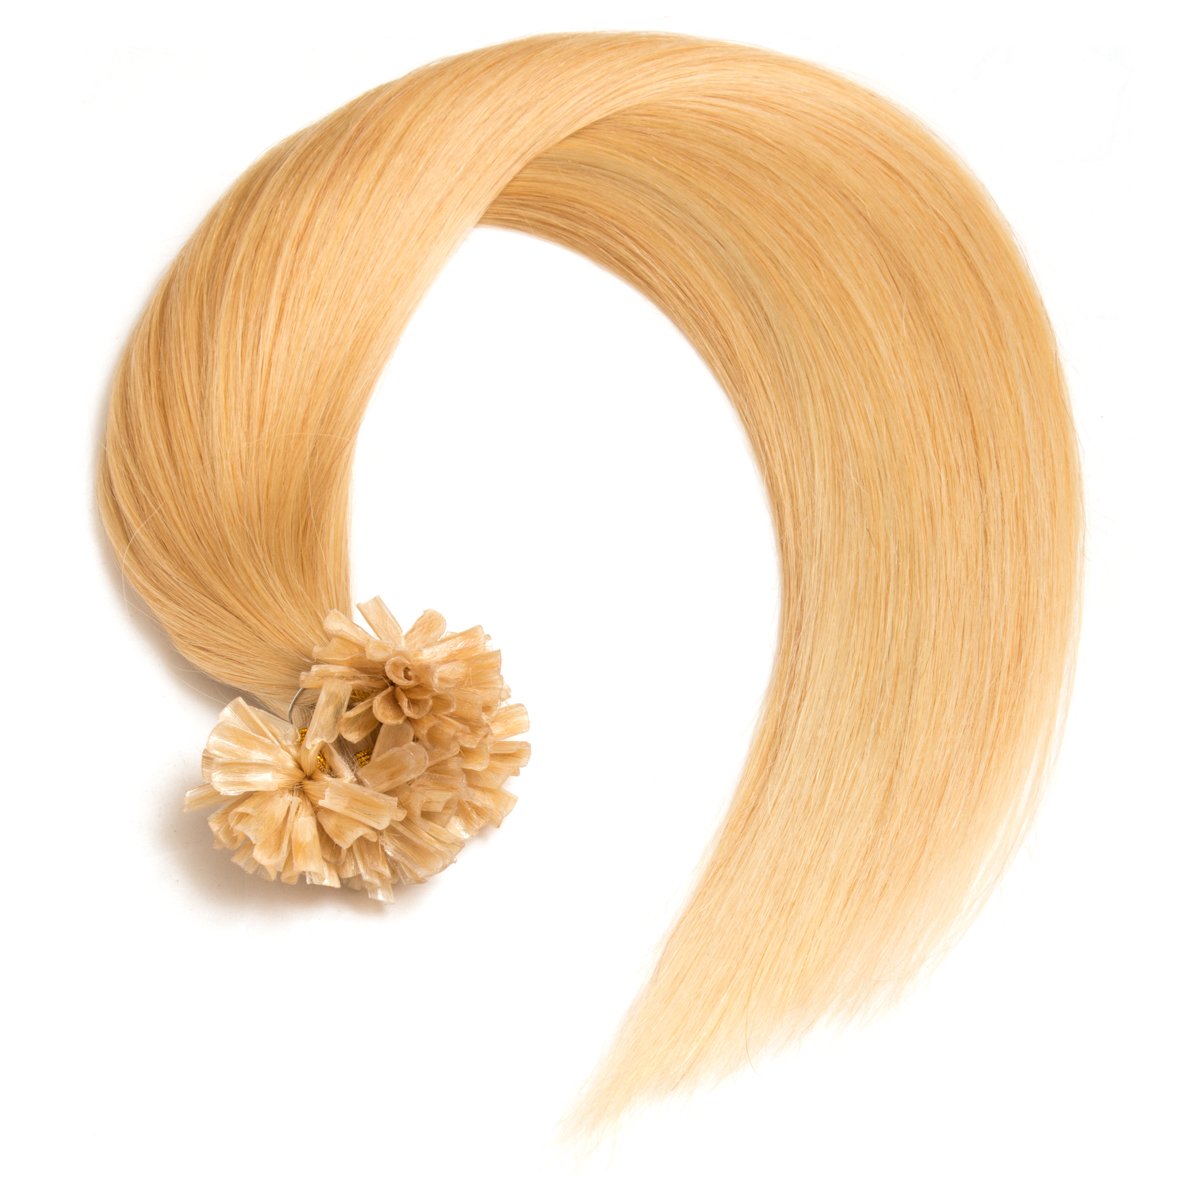 Mittelblonde Keratin Bonding Extensions aus 100% Remy Echthaar/Human Hair 250 0,5g 50cm Glatte Strähnen - U-Tip als Haarverlängerung und Haarverdichtung - Farbe: #22 Mittelblond